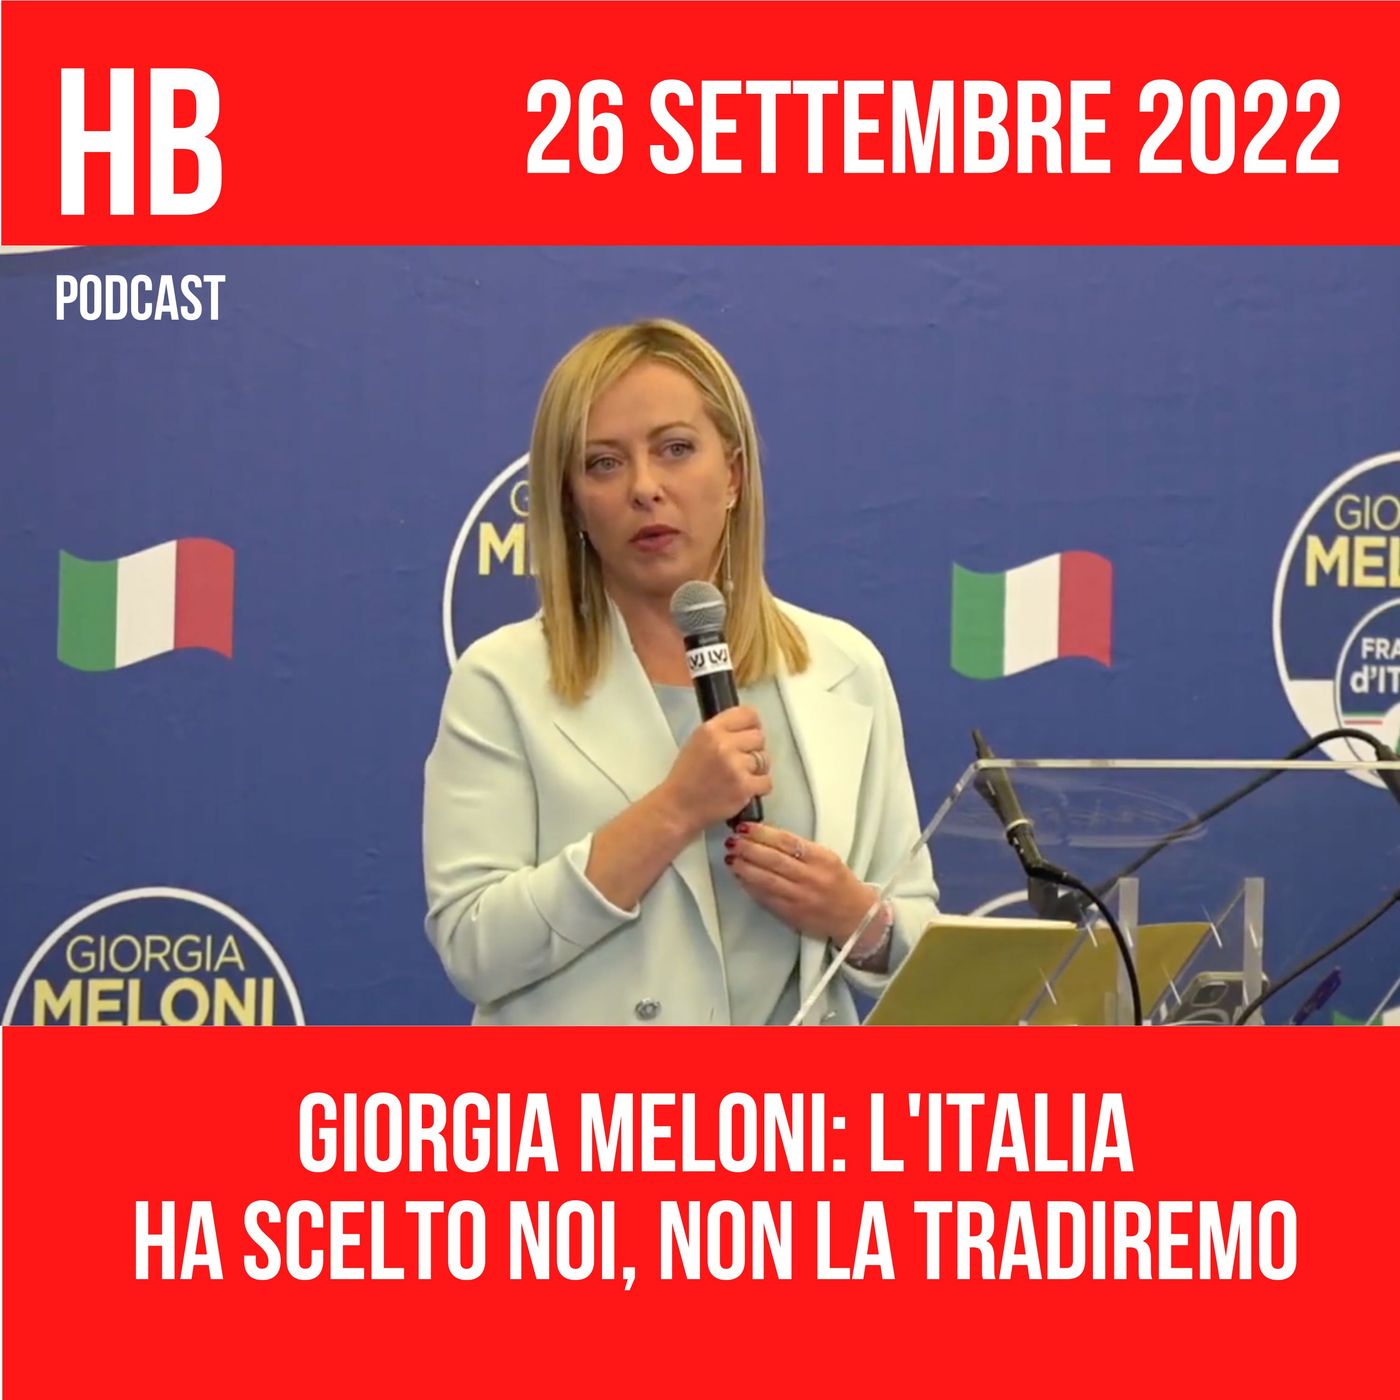 Giorgia Meloni: l'Italia ha scelto noi, non la tradiremo